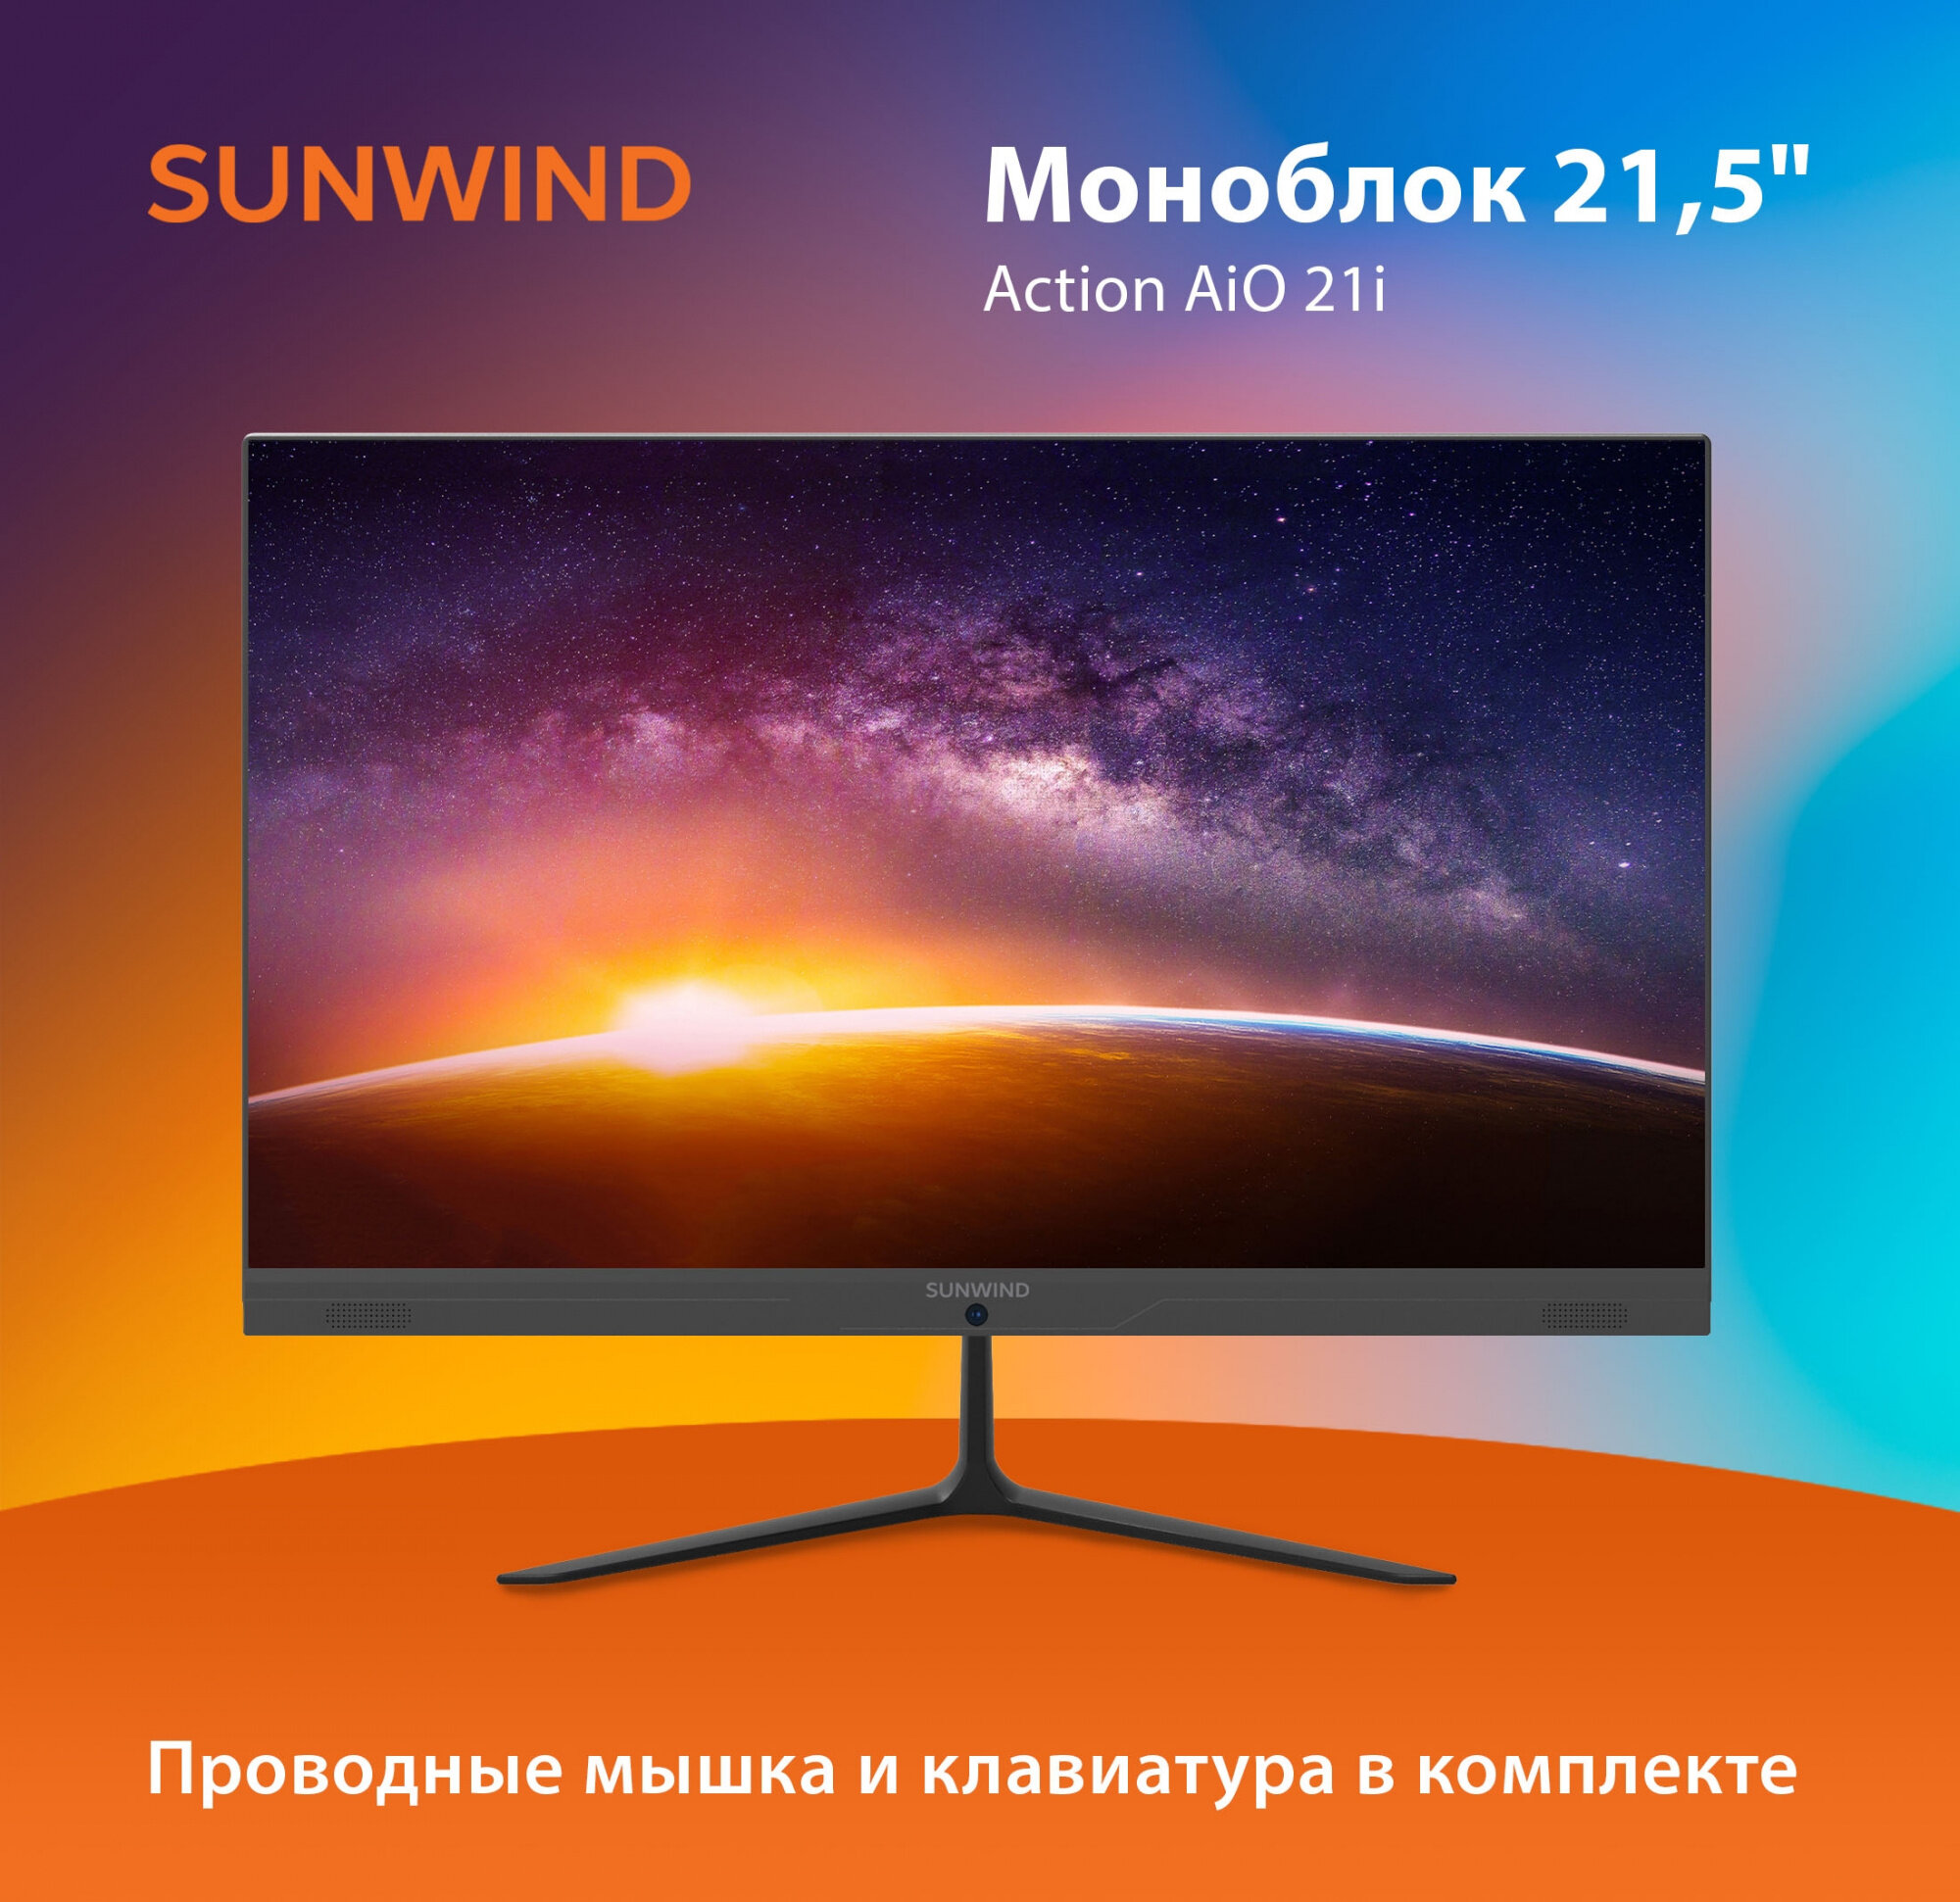 Моноблок SunWind Action AiO 21i 215" Intel Celeron N4020 4ГБ 256ГБ SSD Intel UHD Graphics 600 Ubuntu черный [um21cn-4cxu01]